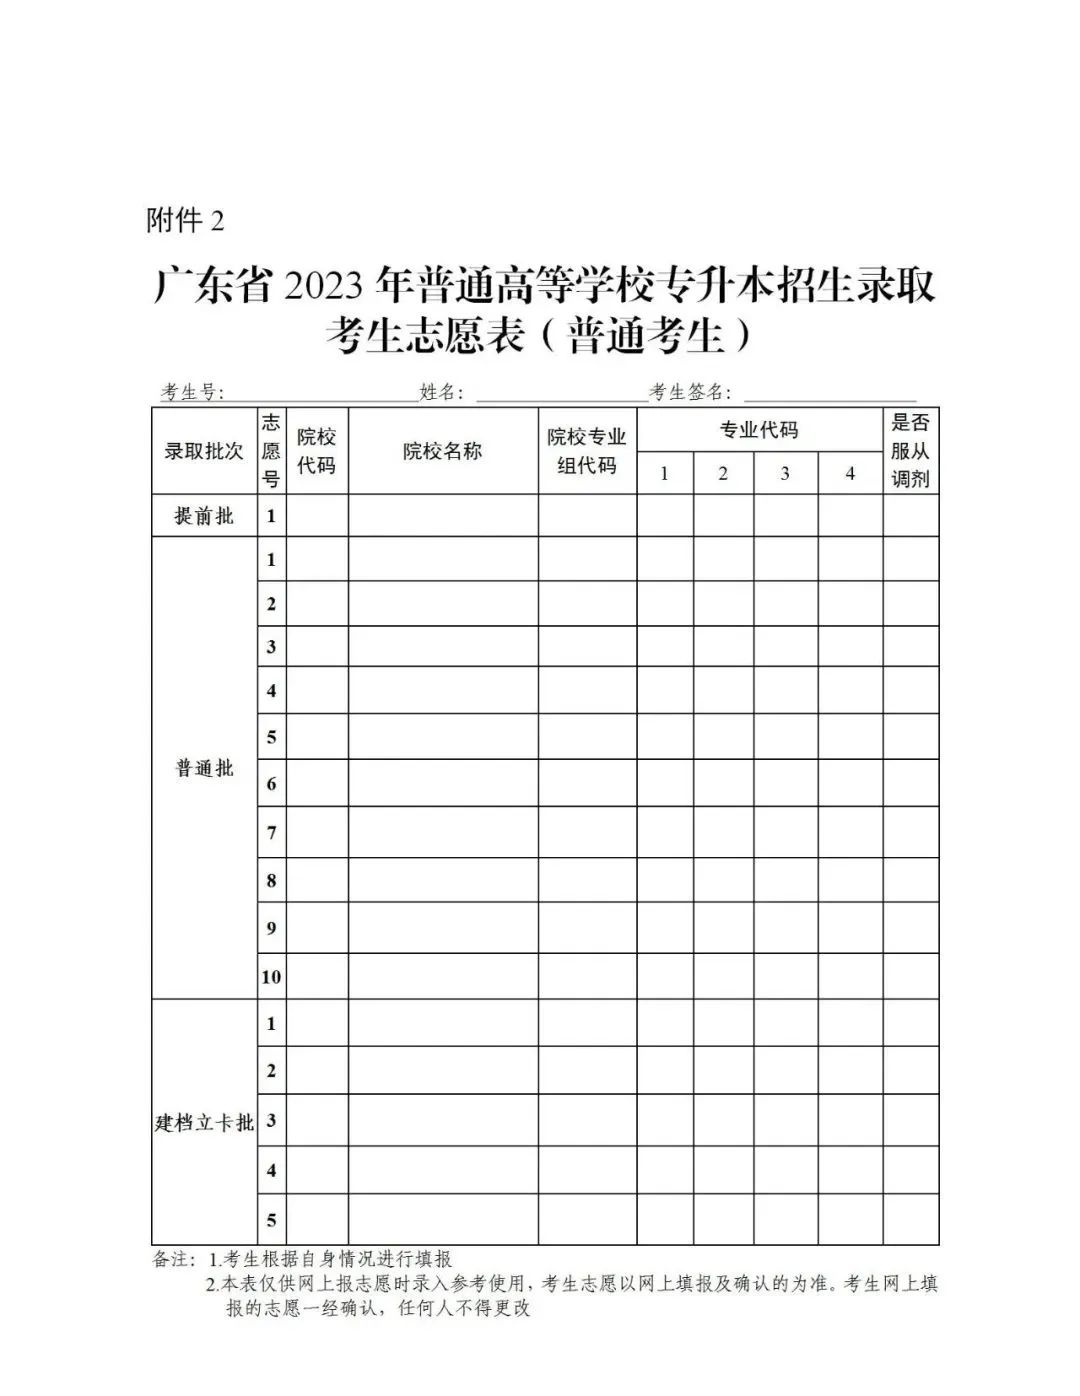 2023年广东专升本考试招生志愿填报